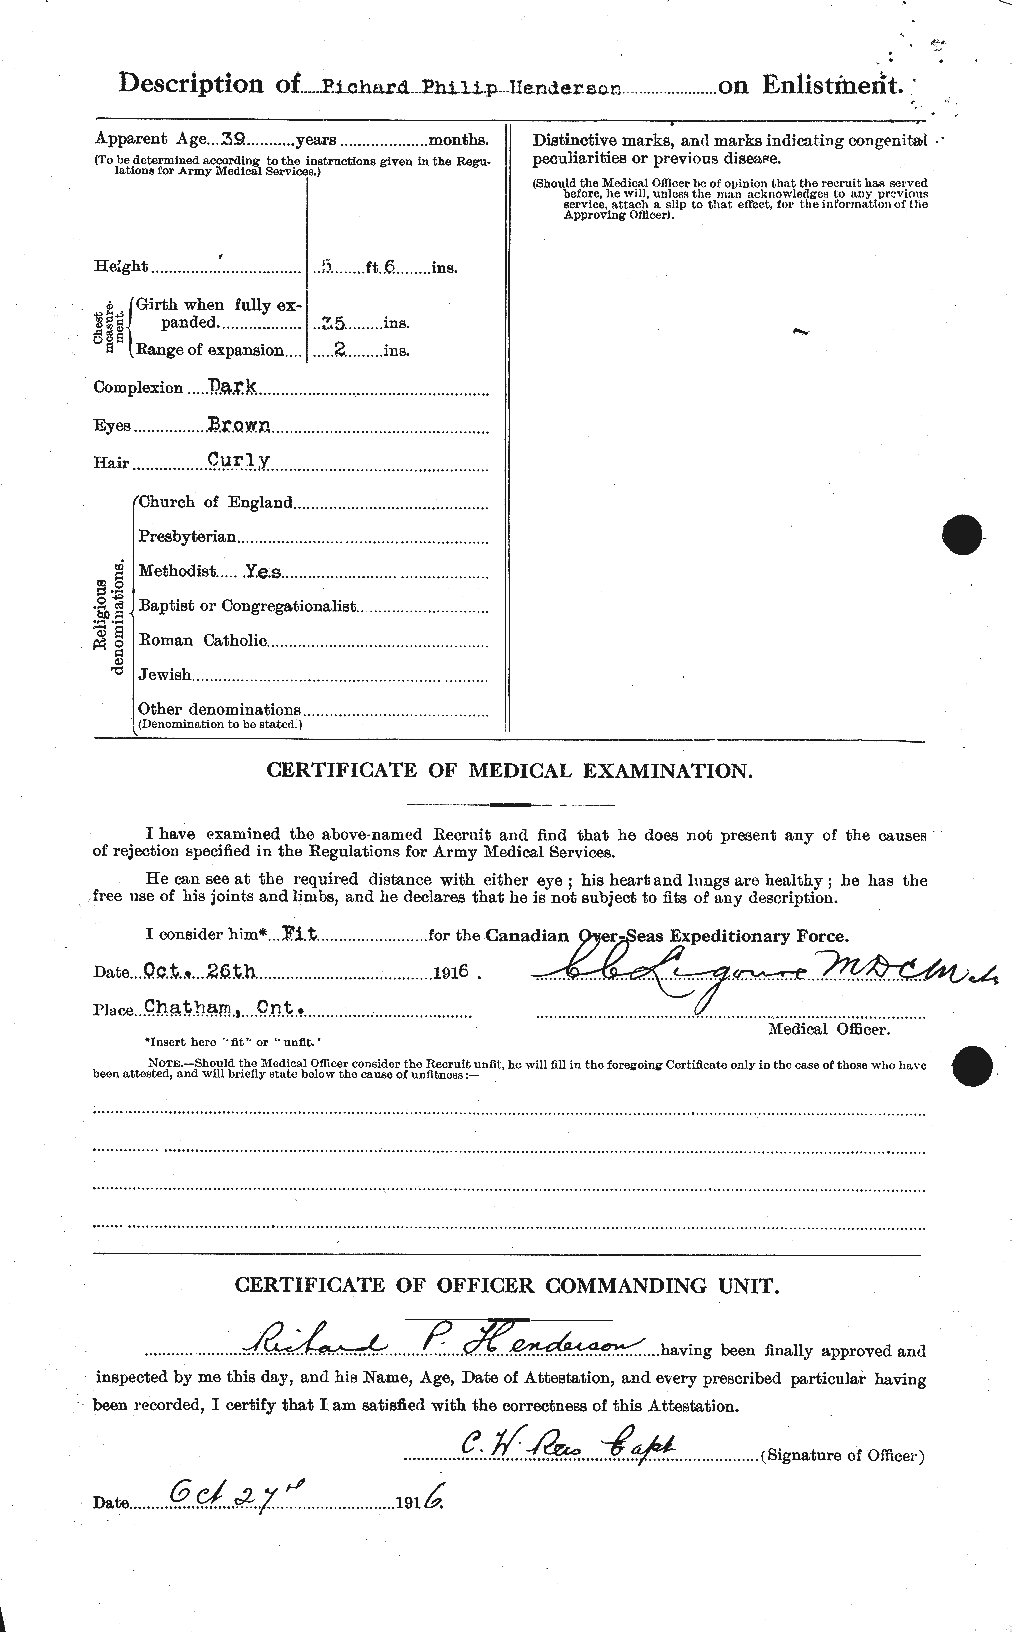 Dossiers du Personnel de la Première Guerre mondiale - CEC 387320b